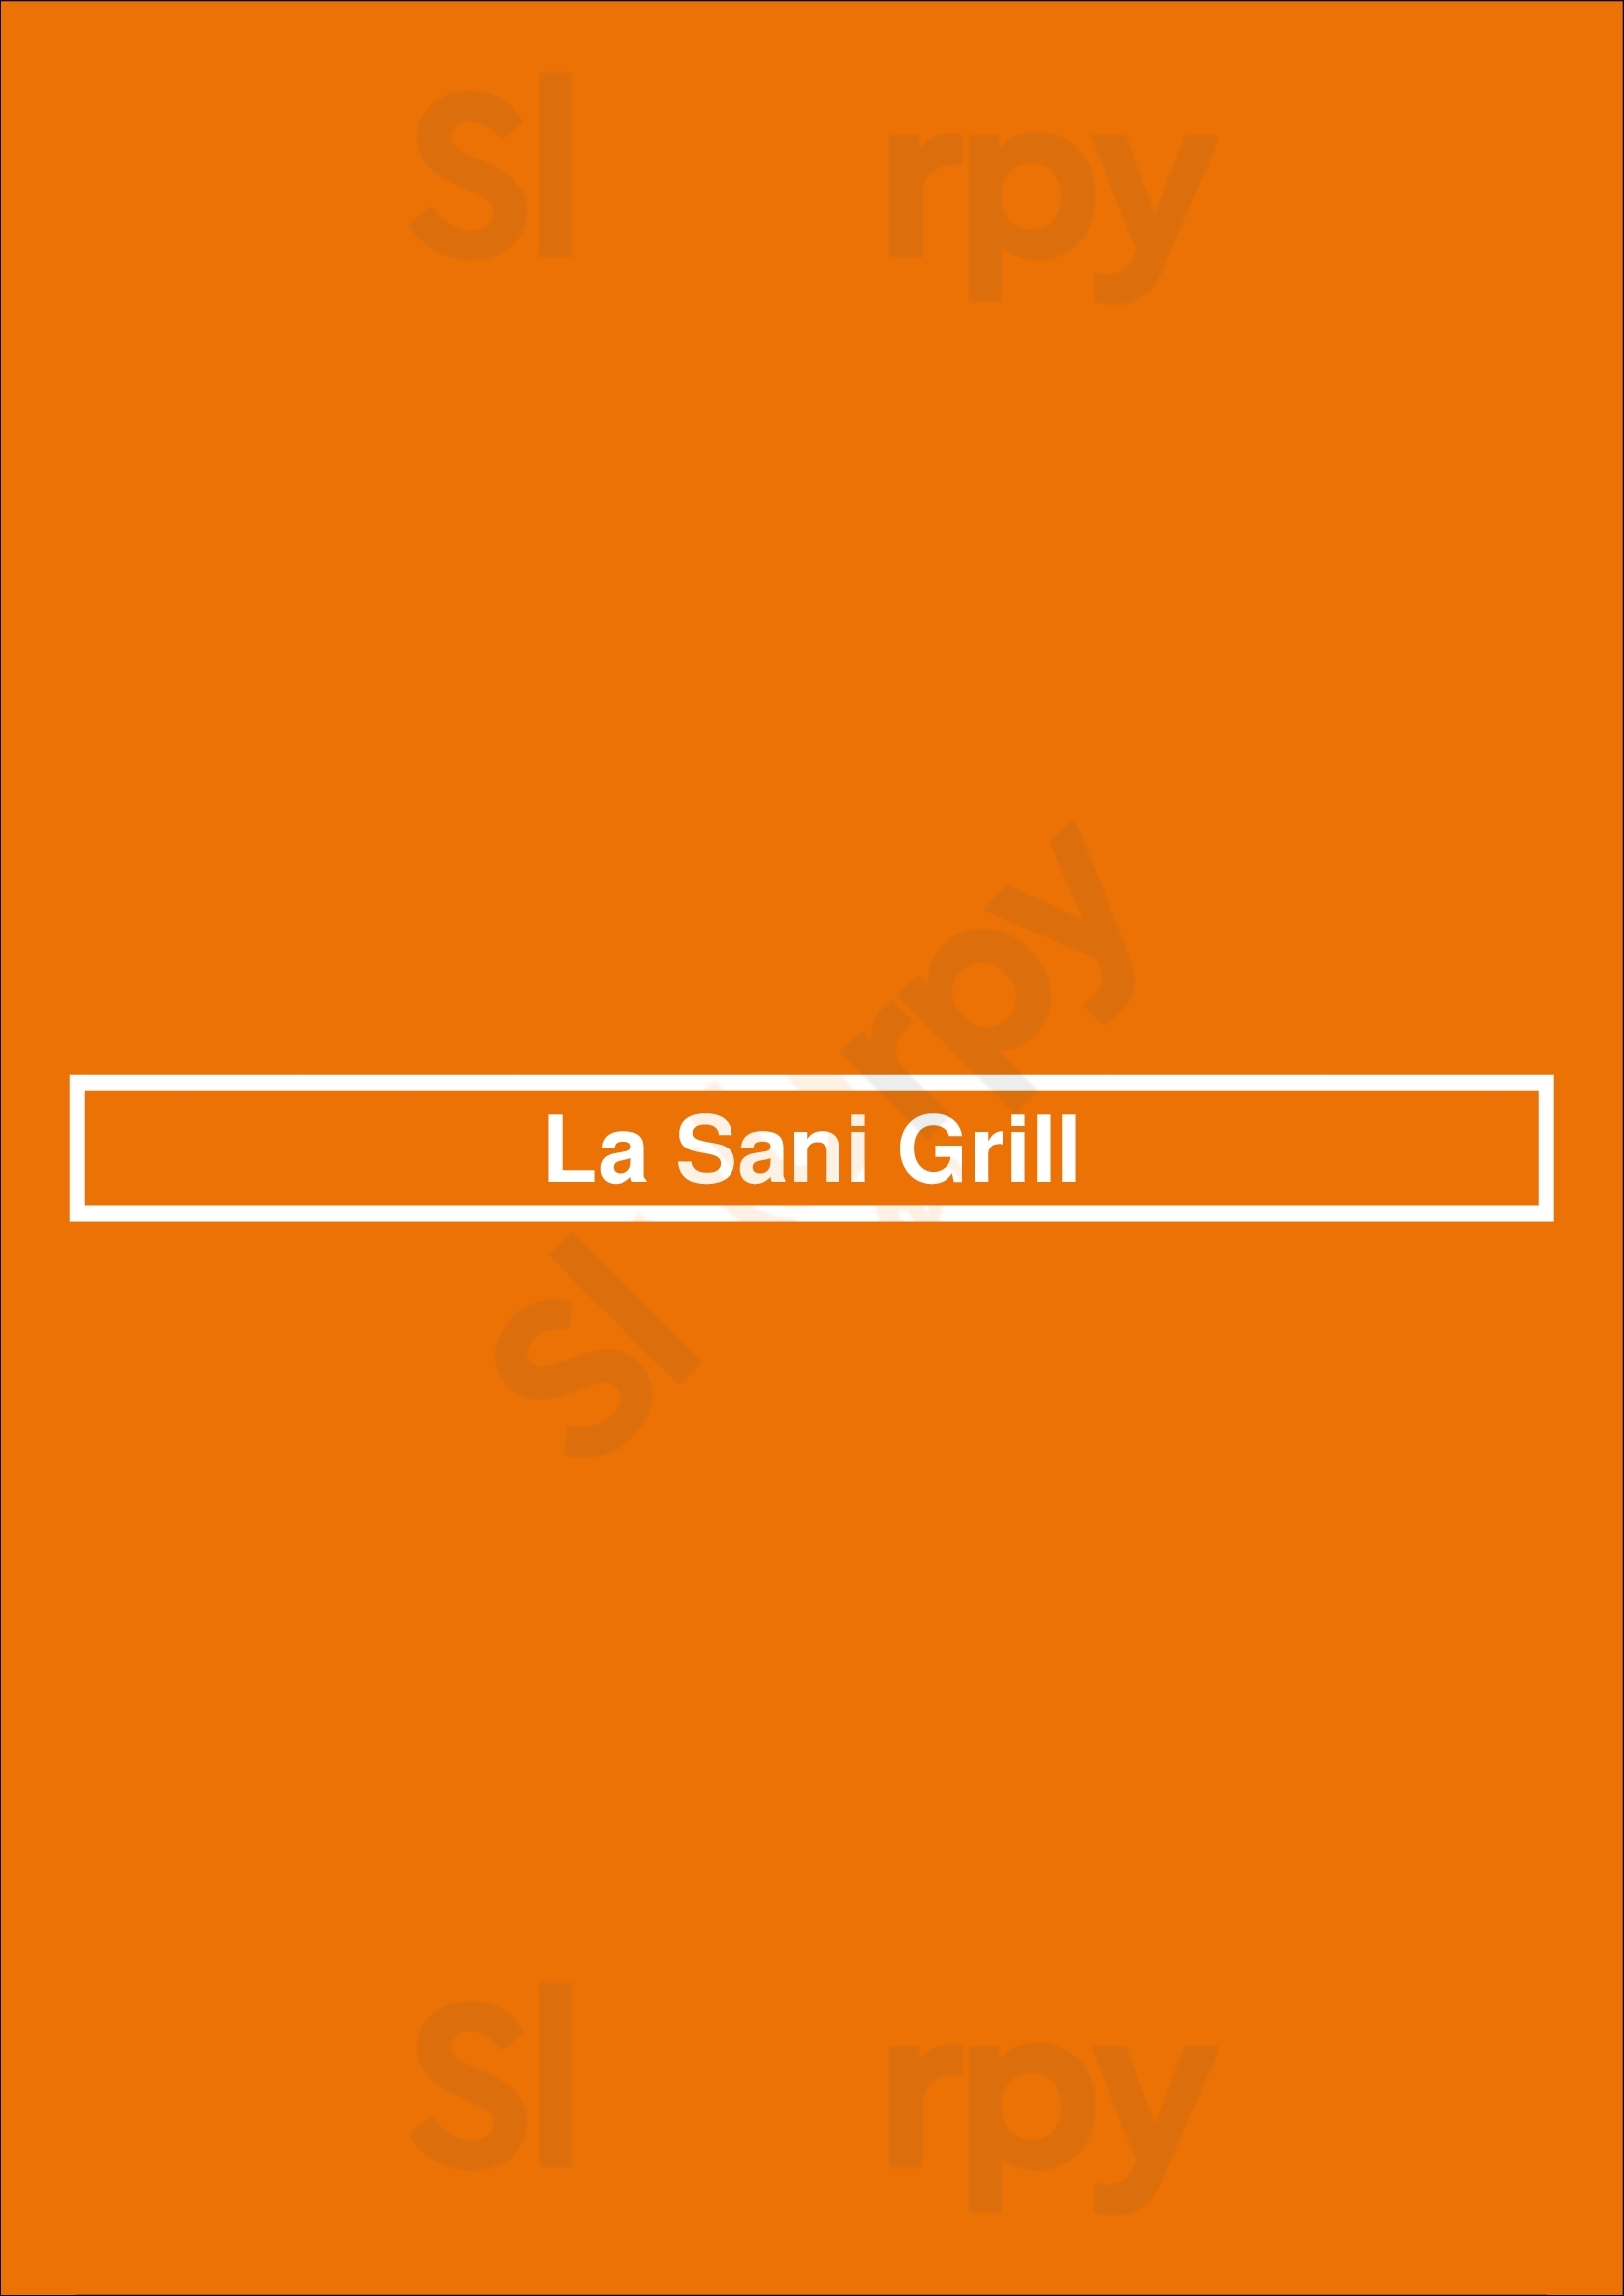 La Sani Grill Ajax Menu - 1